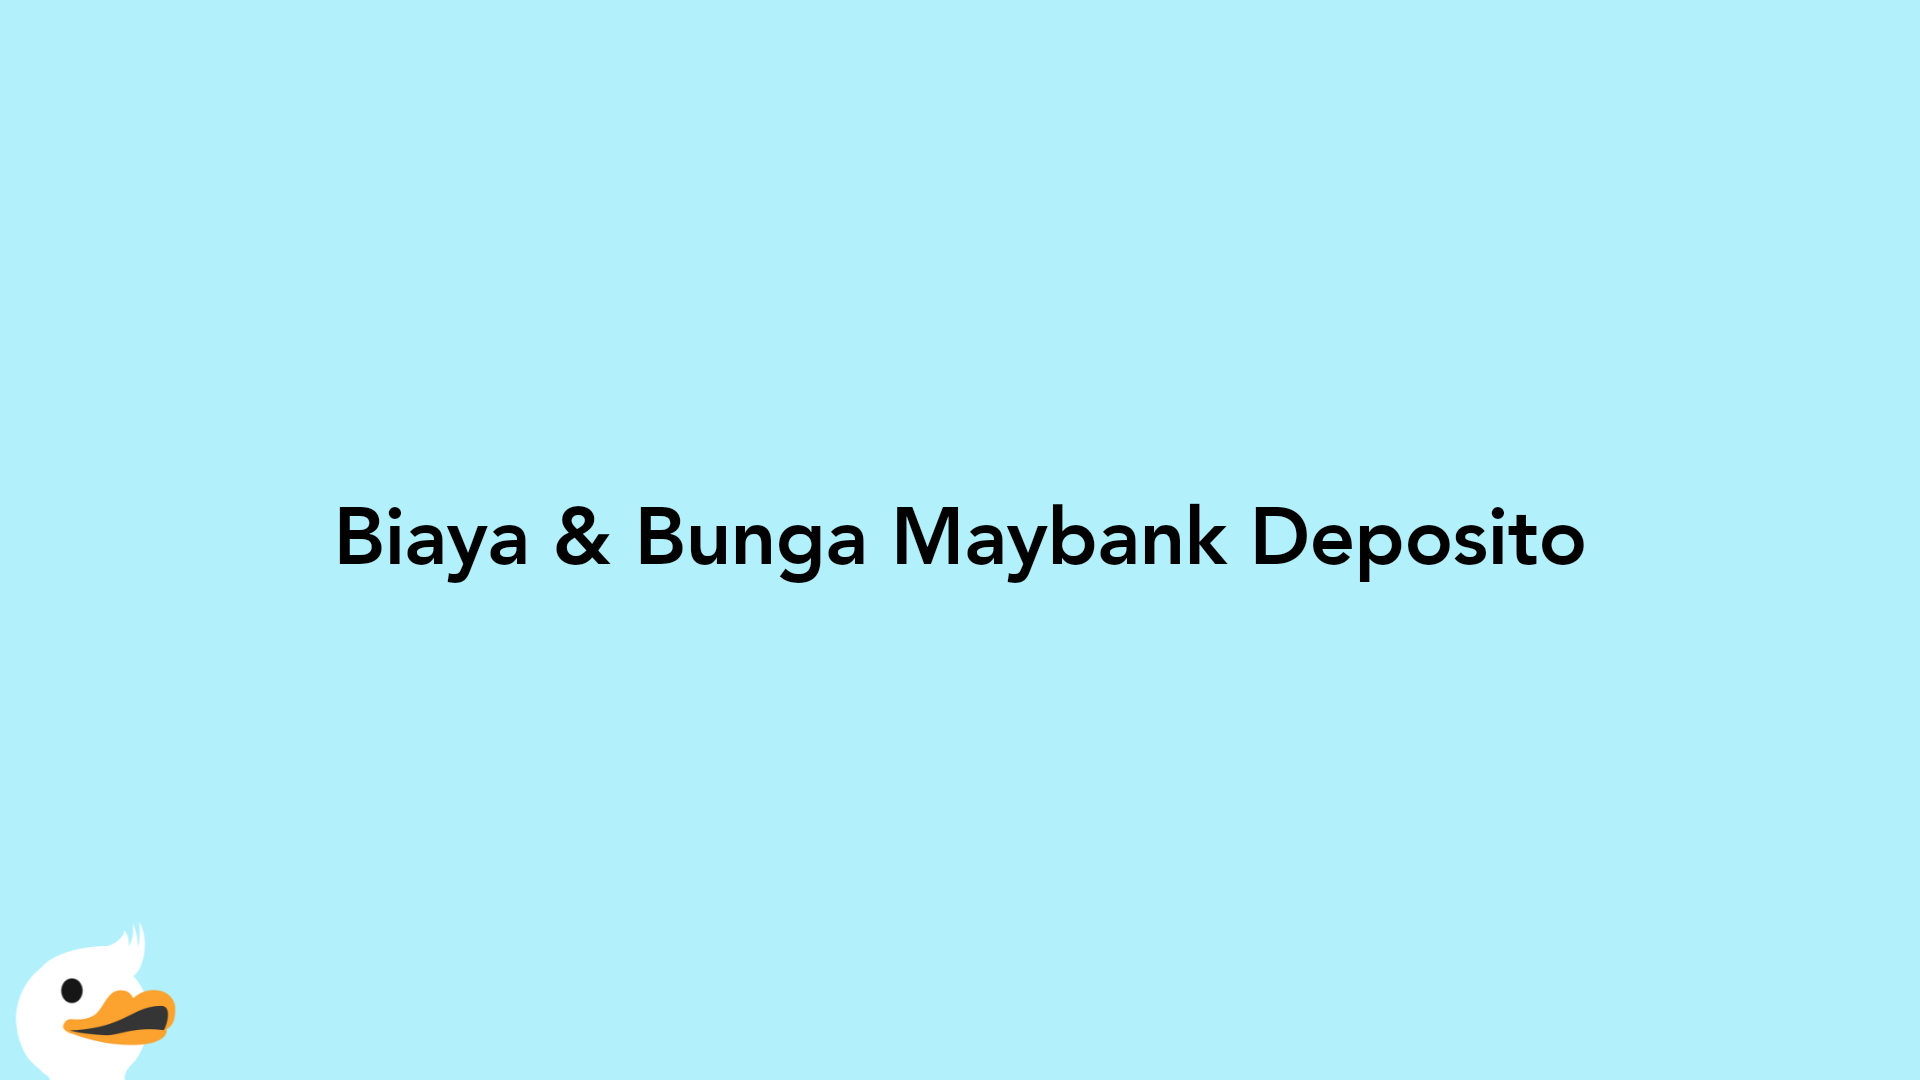 Biaya & Bunga Maybank Deposito